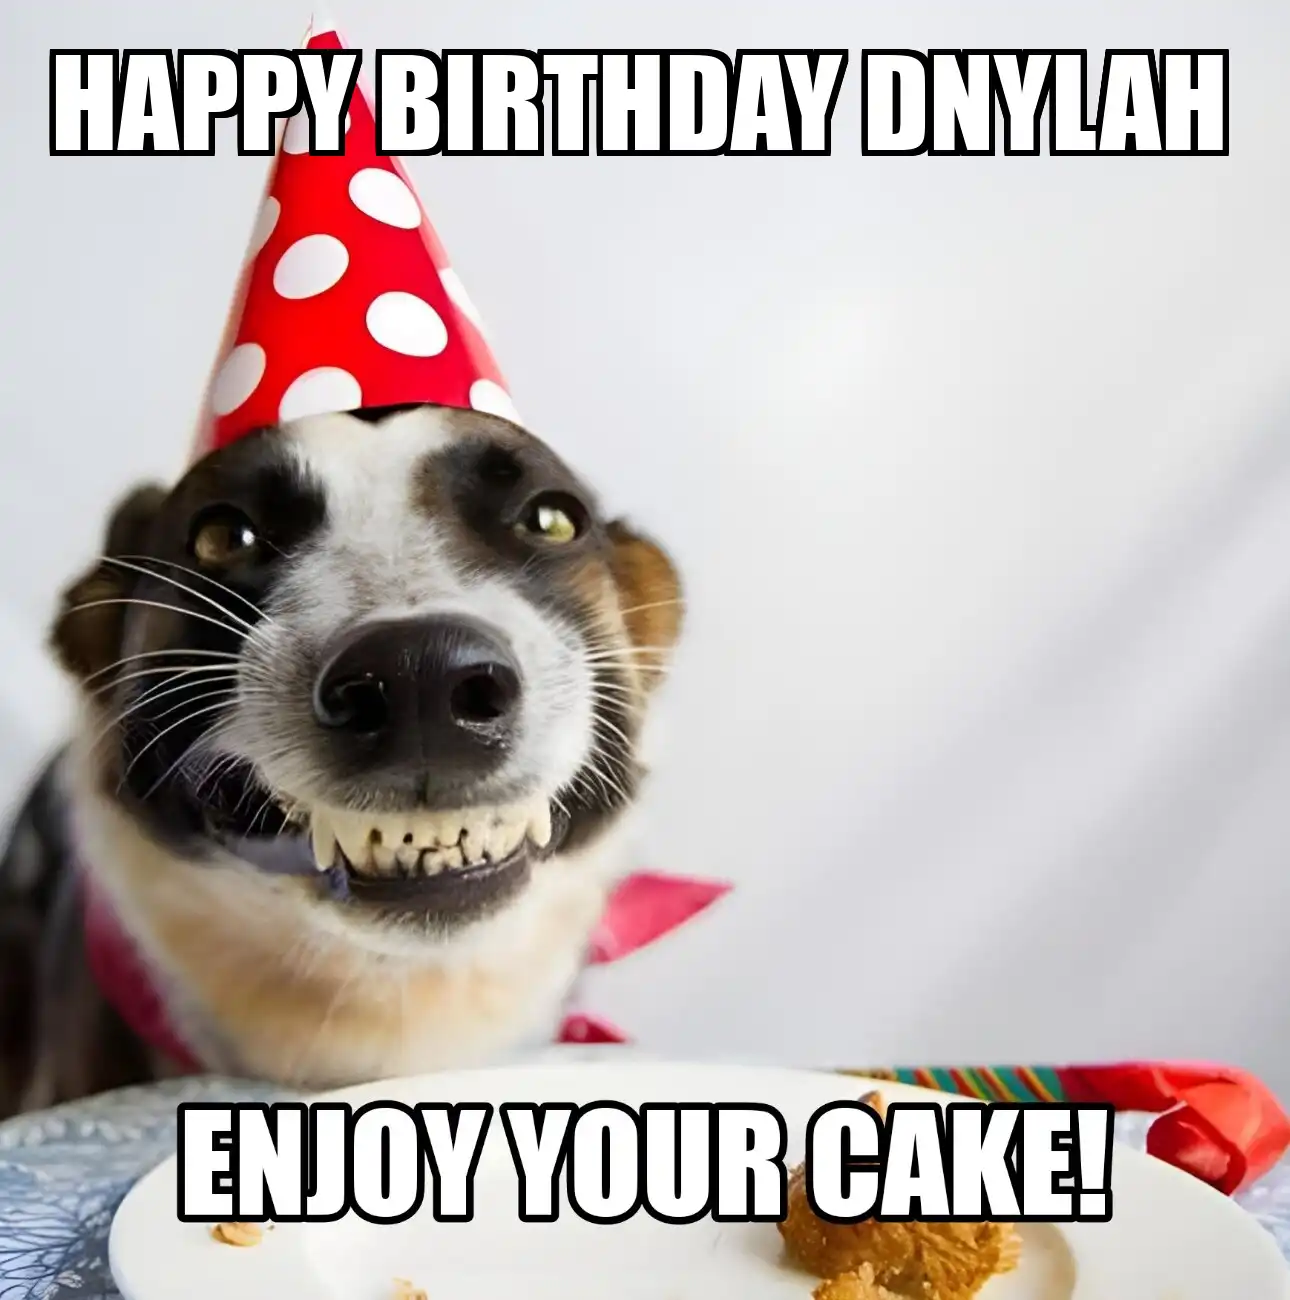 Happy Birthday Dnylah Enjoy Your Cake Dog Meme